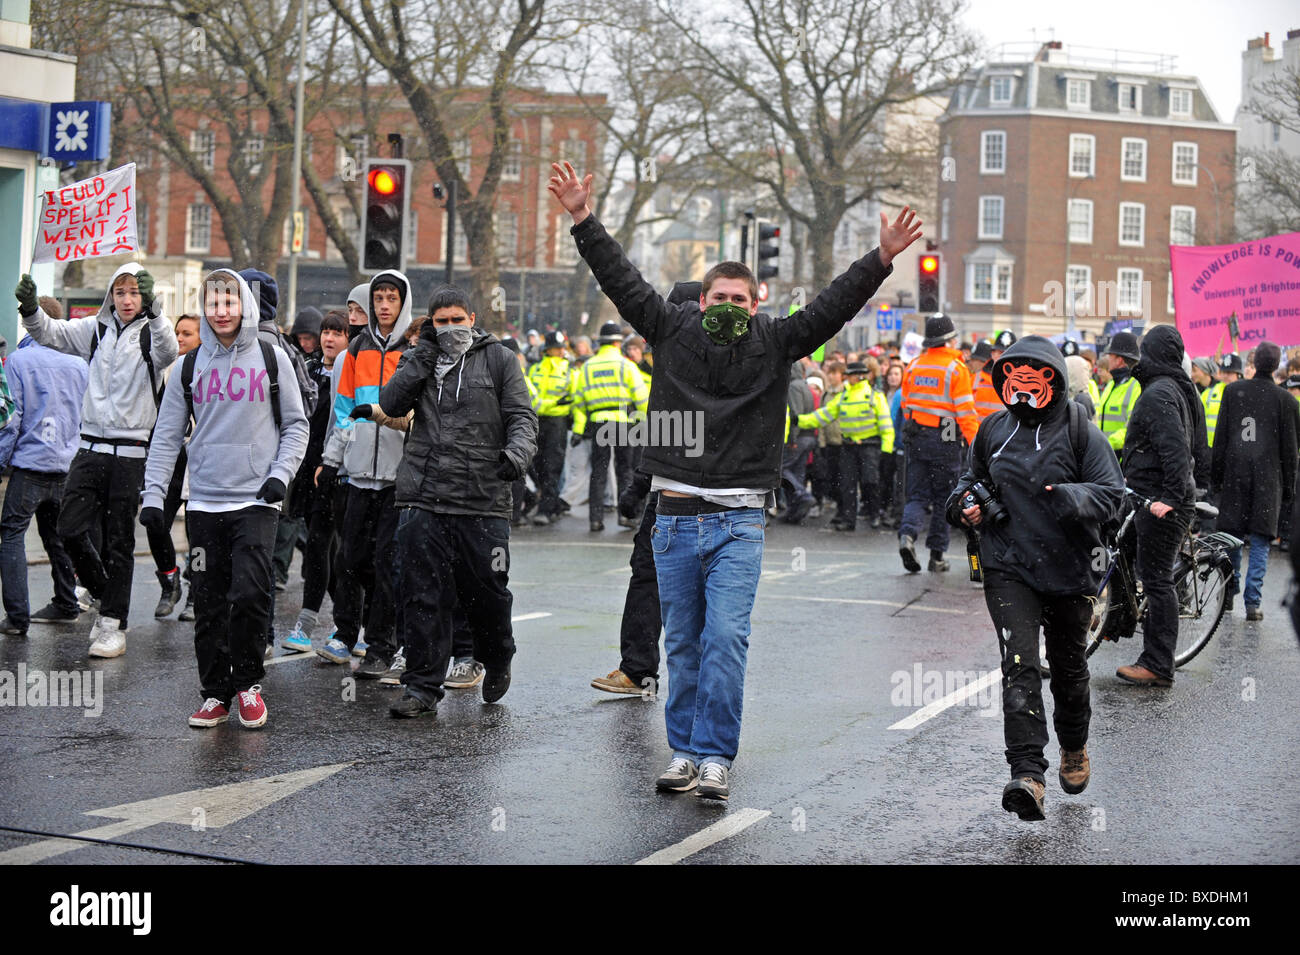 Grande manifestation à Londres contre le gouvernement avait réduit le financement de l'enseignement supérieur de manifestants masqués - marche en tête de ligne de la police Banque D'Images